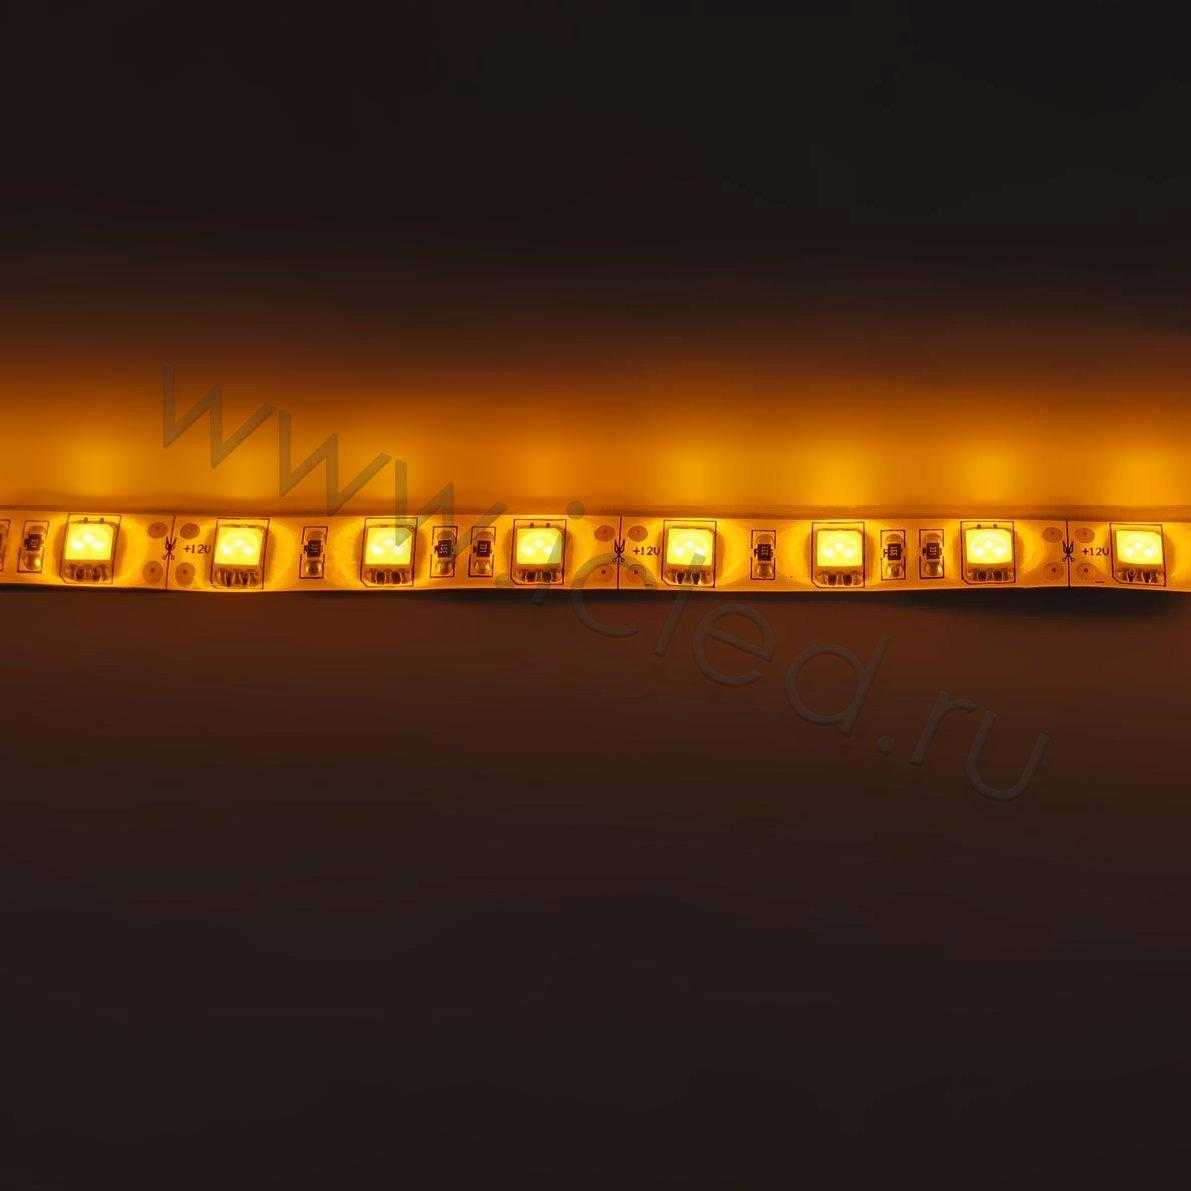 Влагозащищенные светодиодные ленты Светодиодная лента Standart PRO class, 5050, 60led/m, Yellow, 12V, IP65 Icled